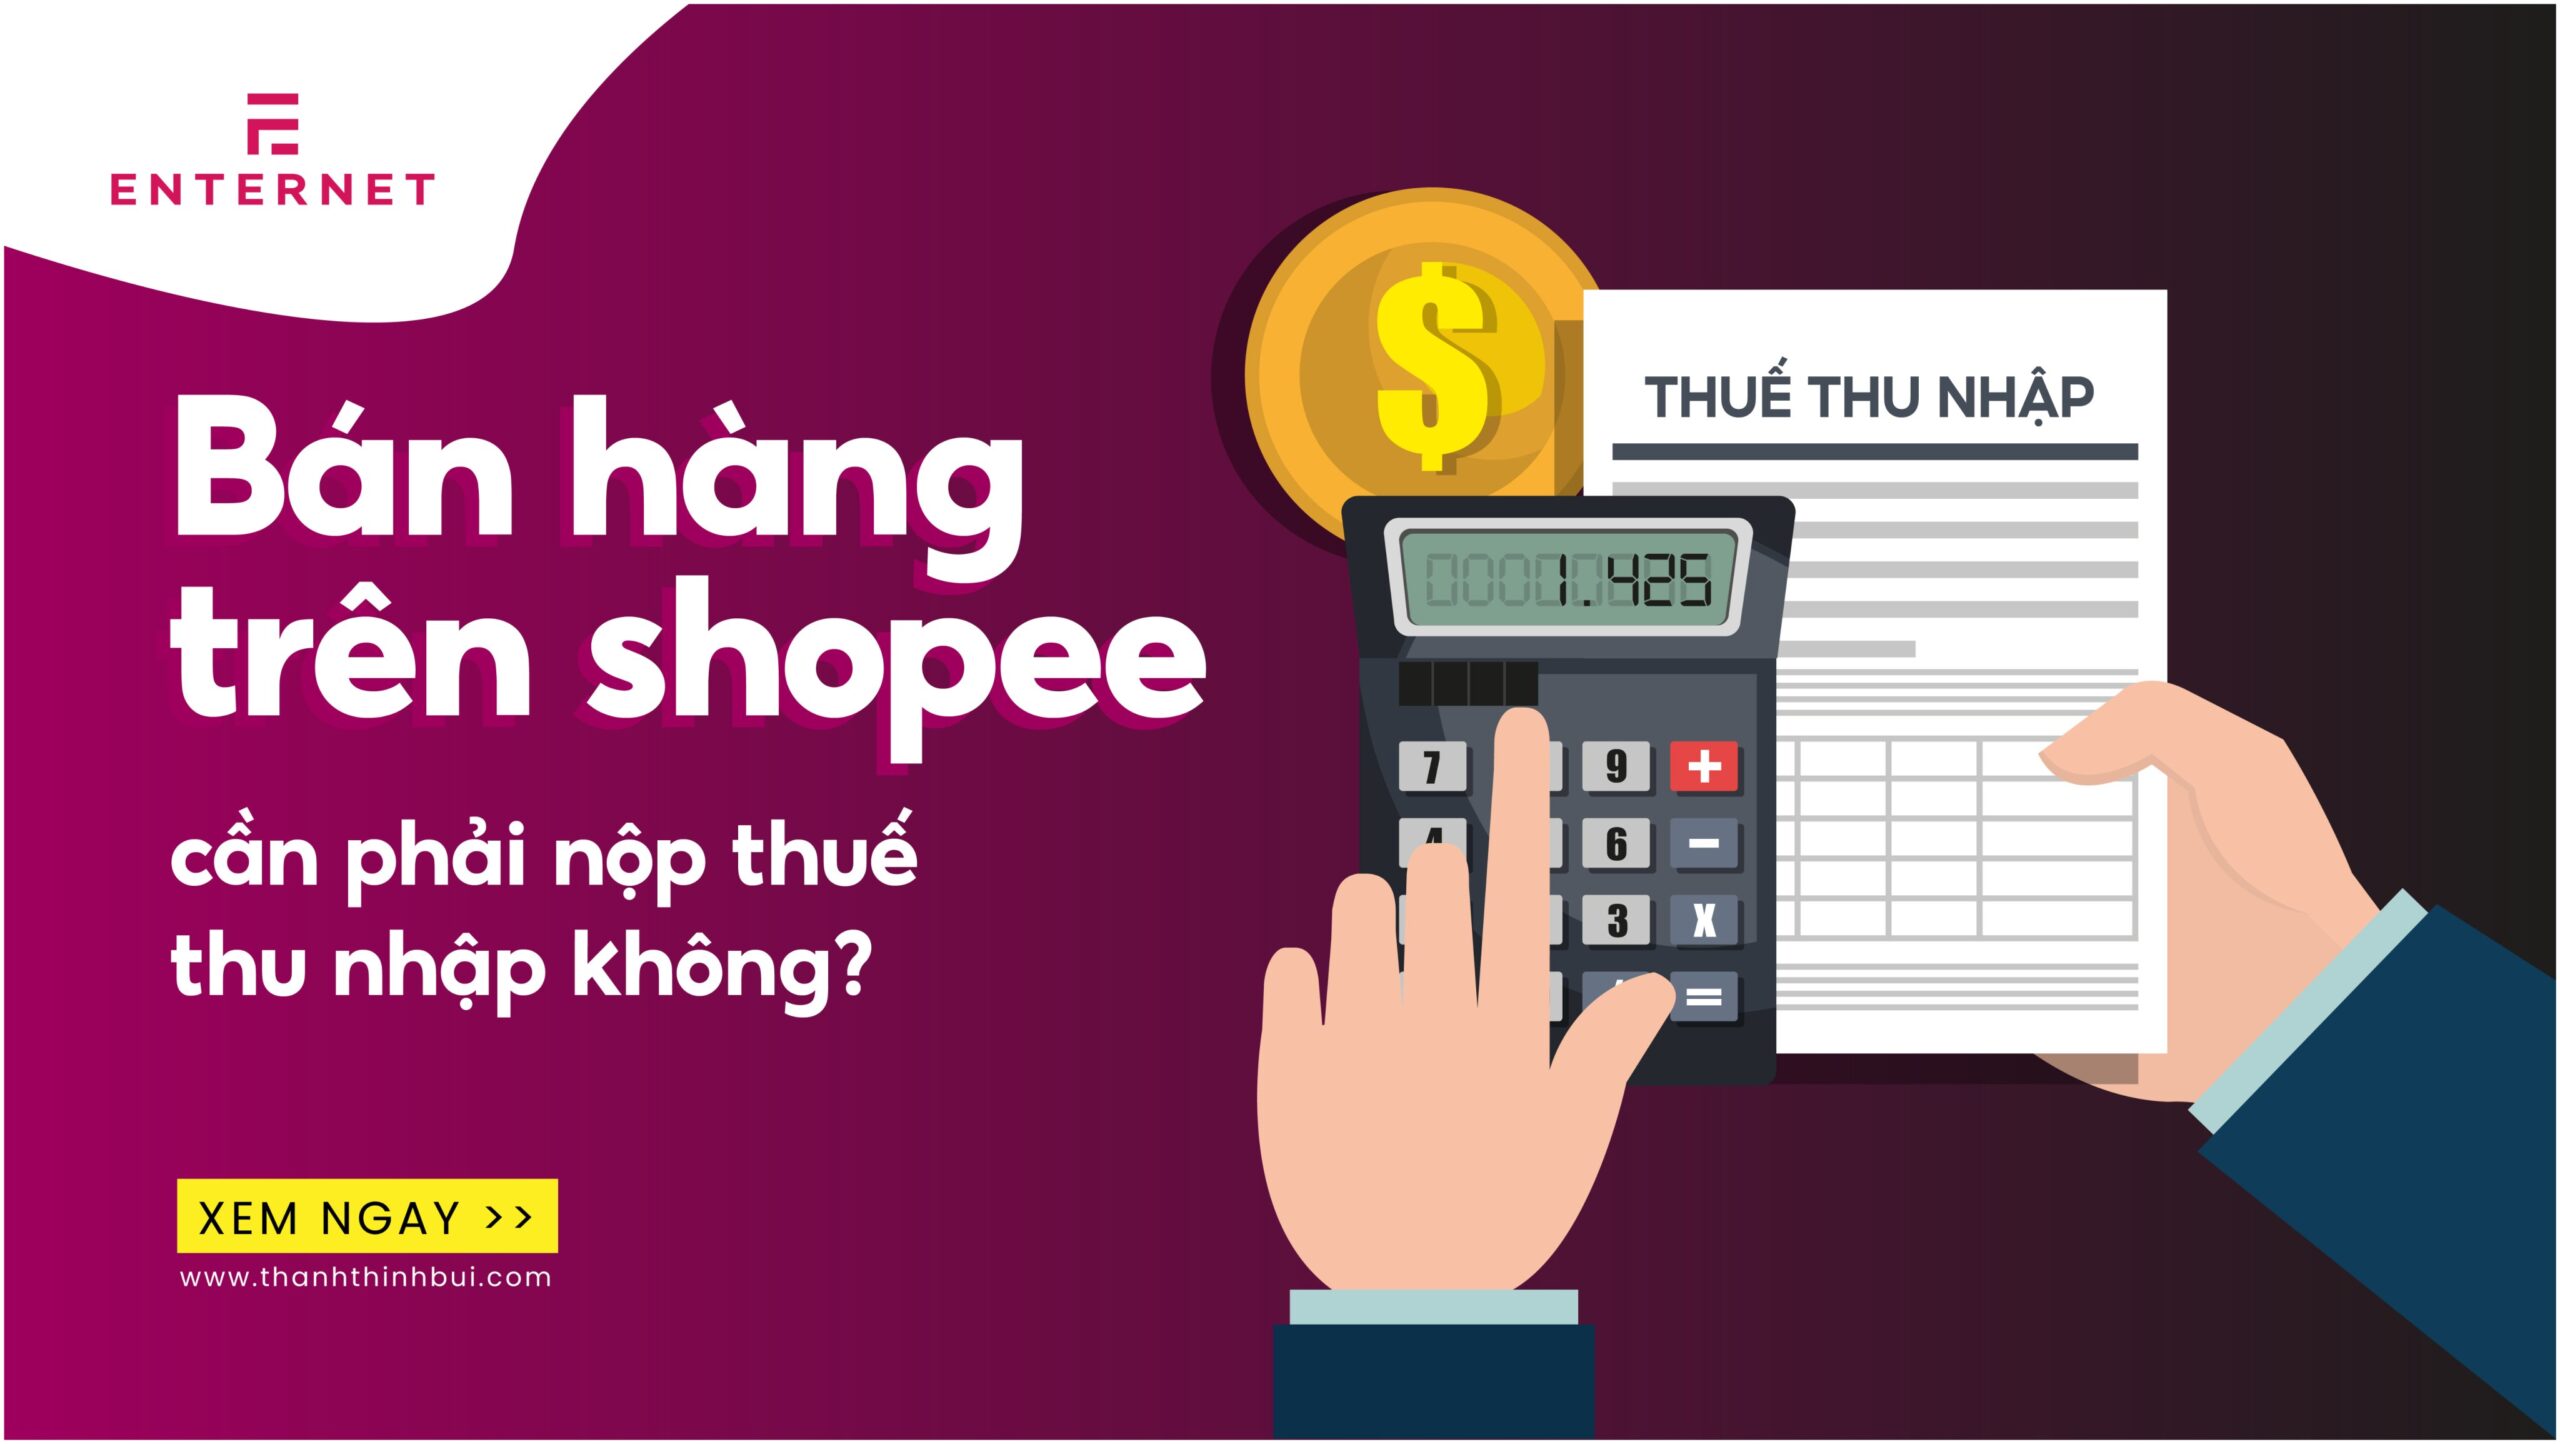 Bán hàng trên Shopee có phải nộp thuế thu nhập không?